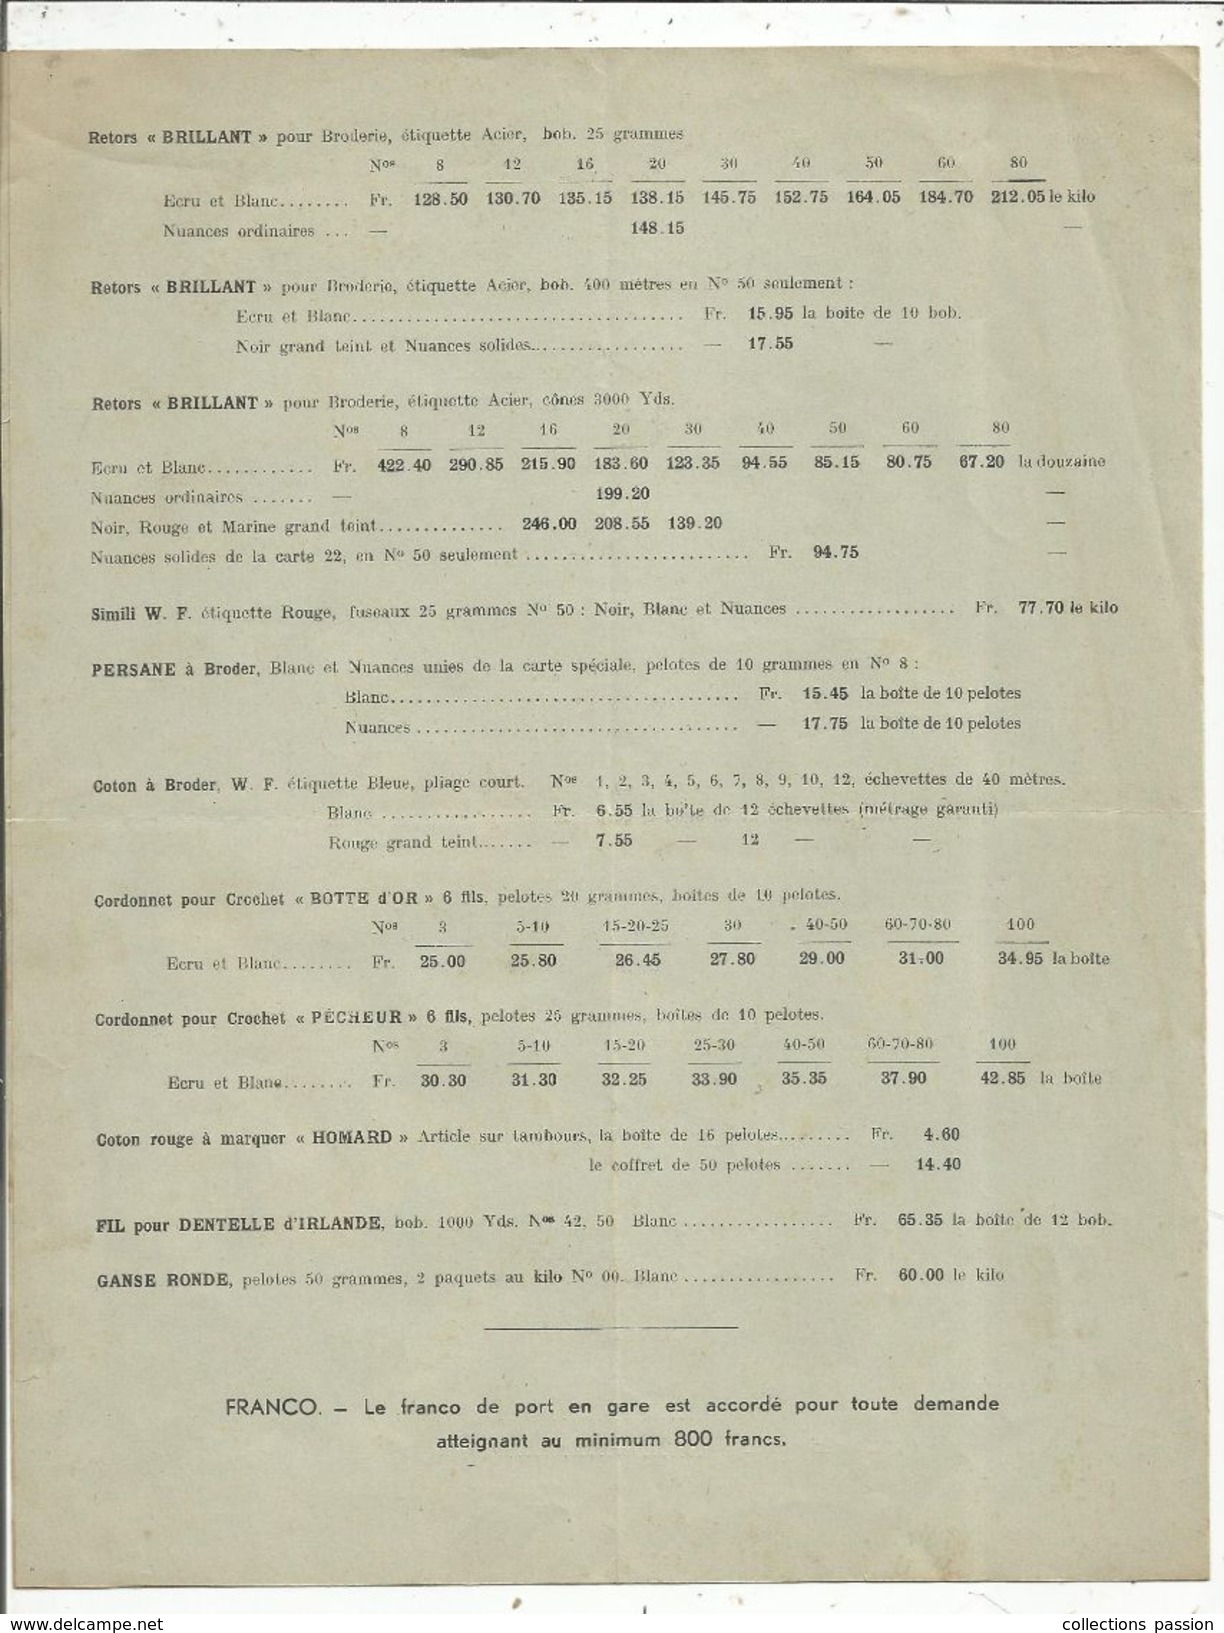 Publicité , WALLAERT FRERES ,LILLE , 1940 , Tarif N° 47, 4 Pages, 2 Scans , Frais Fr 1.45e - Advertising